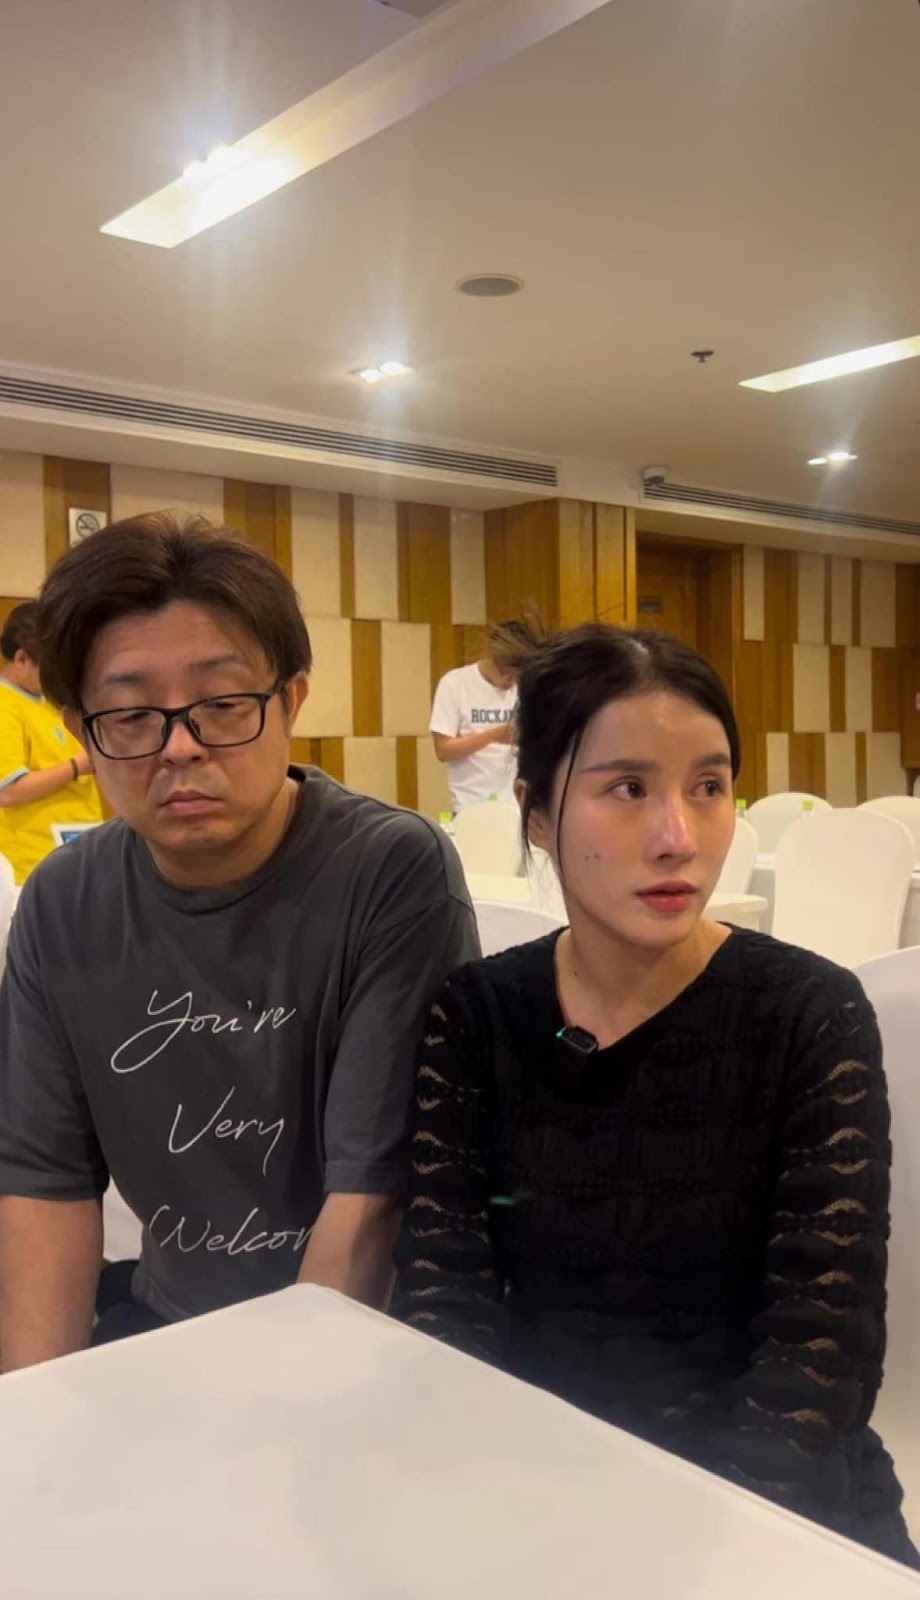 Quỳnh Trần JP tuyên bố bác sĩ Thịnh sai, khẳng định không bênh bà Nhân Vlog, hé lộ 1 bí mật đằng sau - ảnh 13